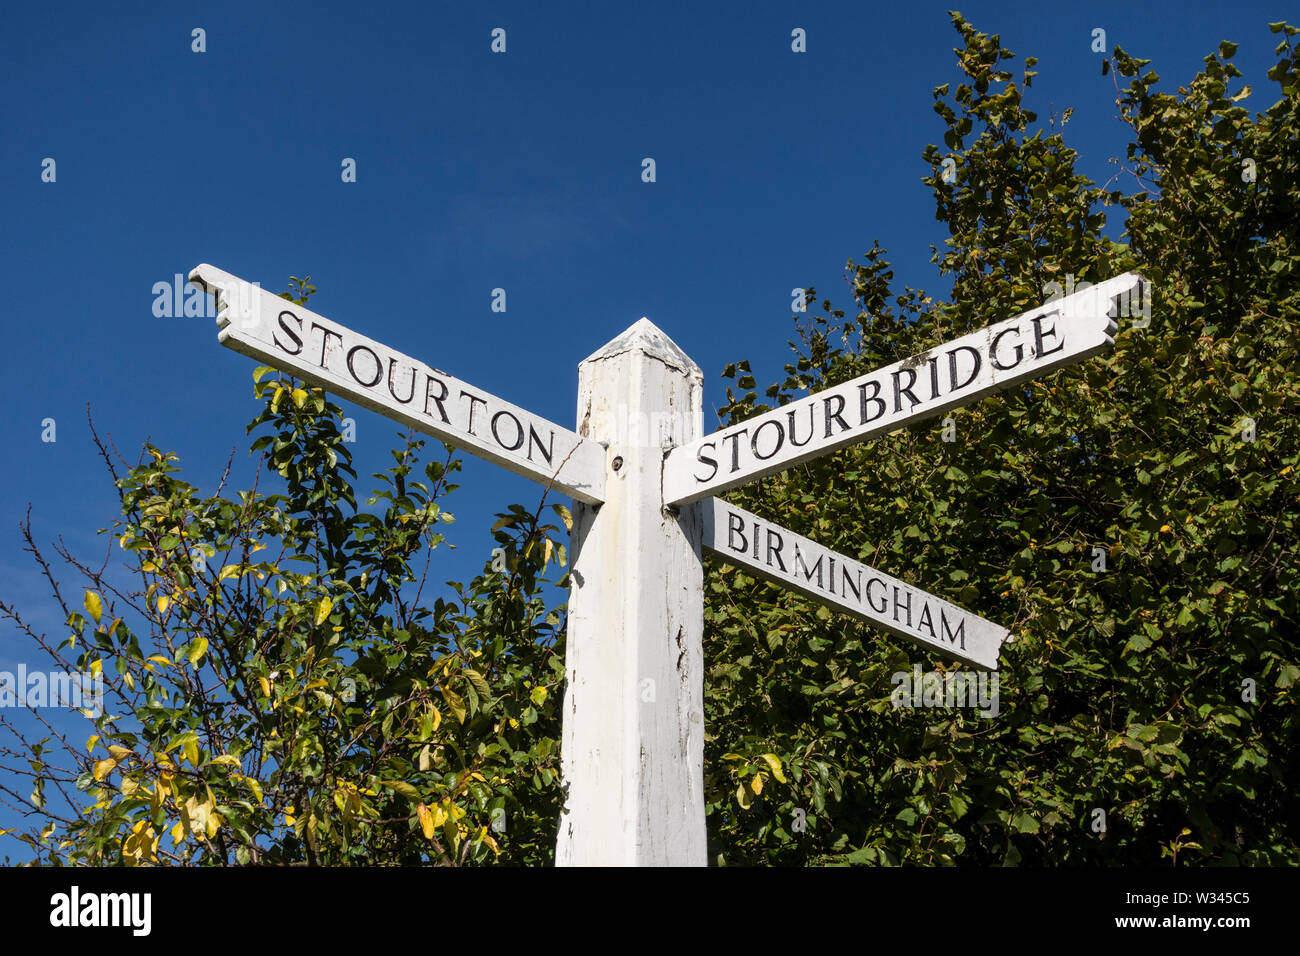 Signpost pointing directions to Stourton, Stourbridge and Birmingham, West Midlands, UK Stock Photo